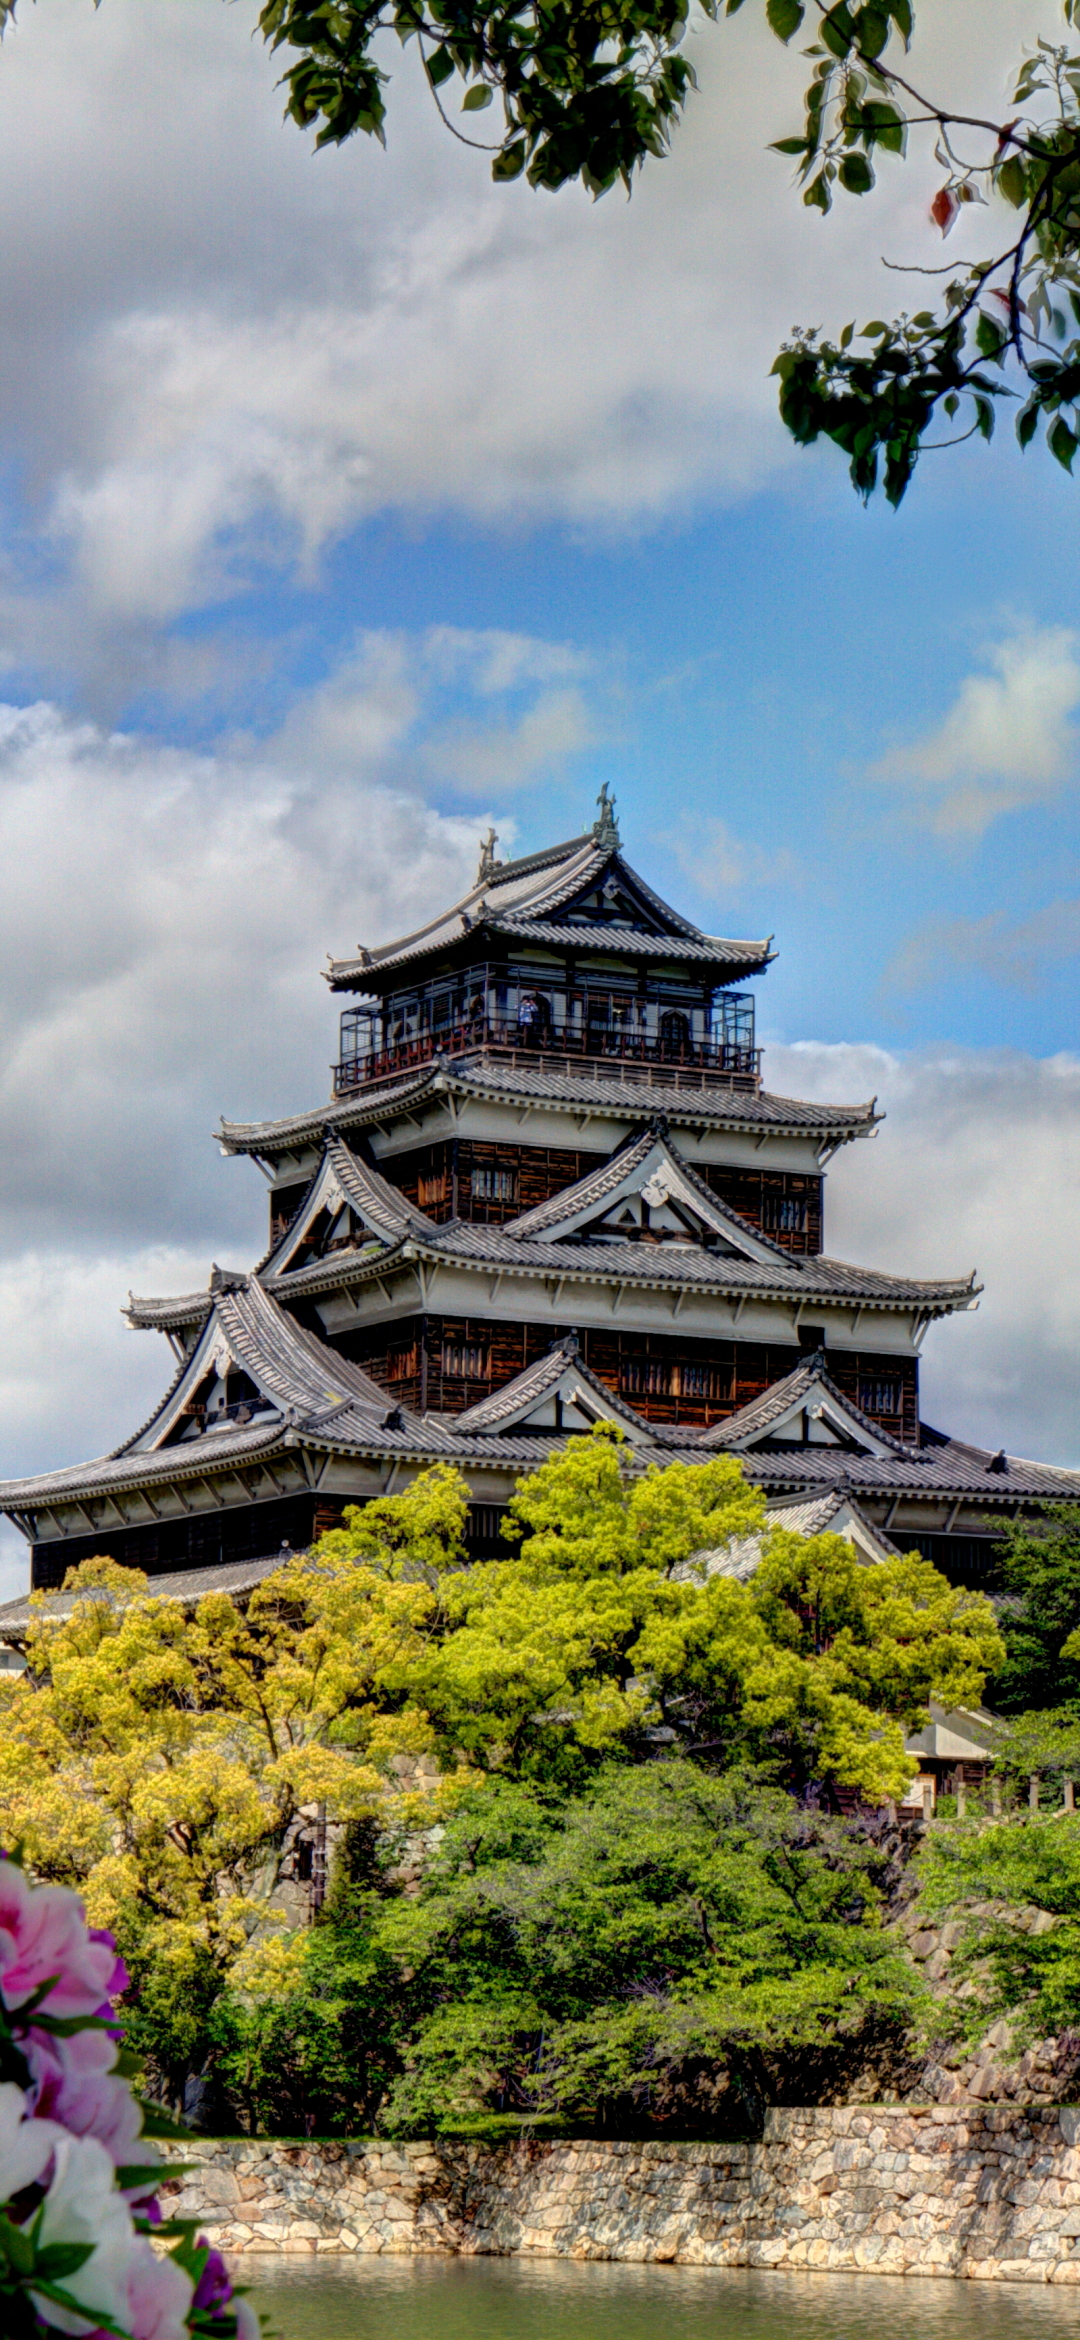 Скачать обои Замок Хиросима на телефон бесплатно